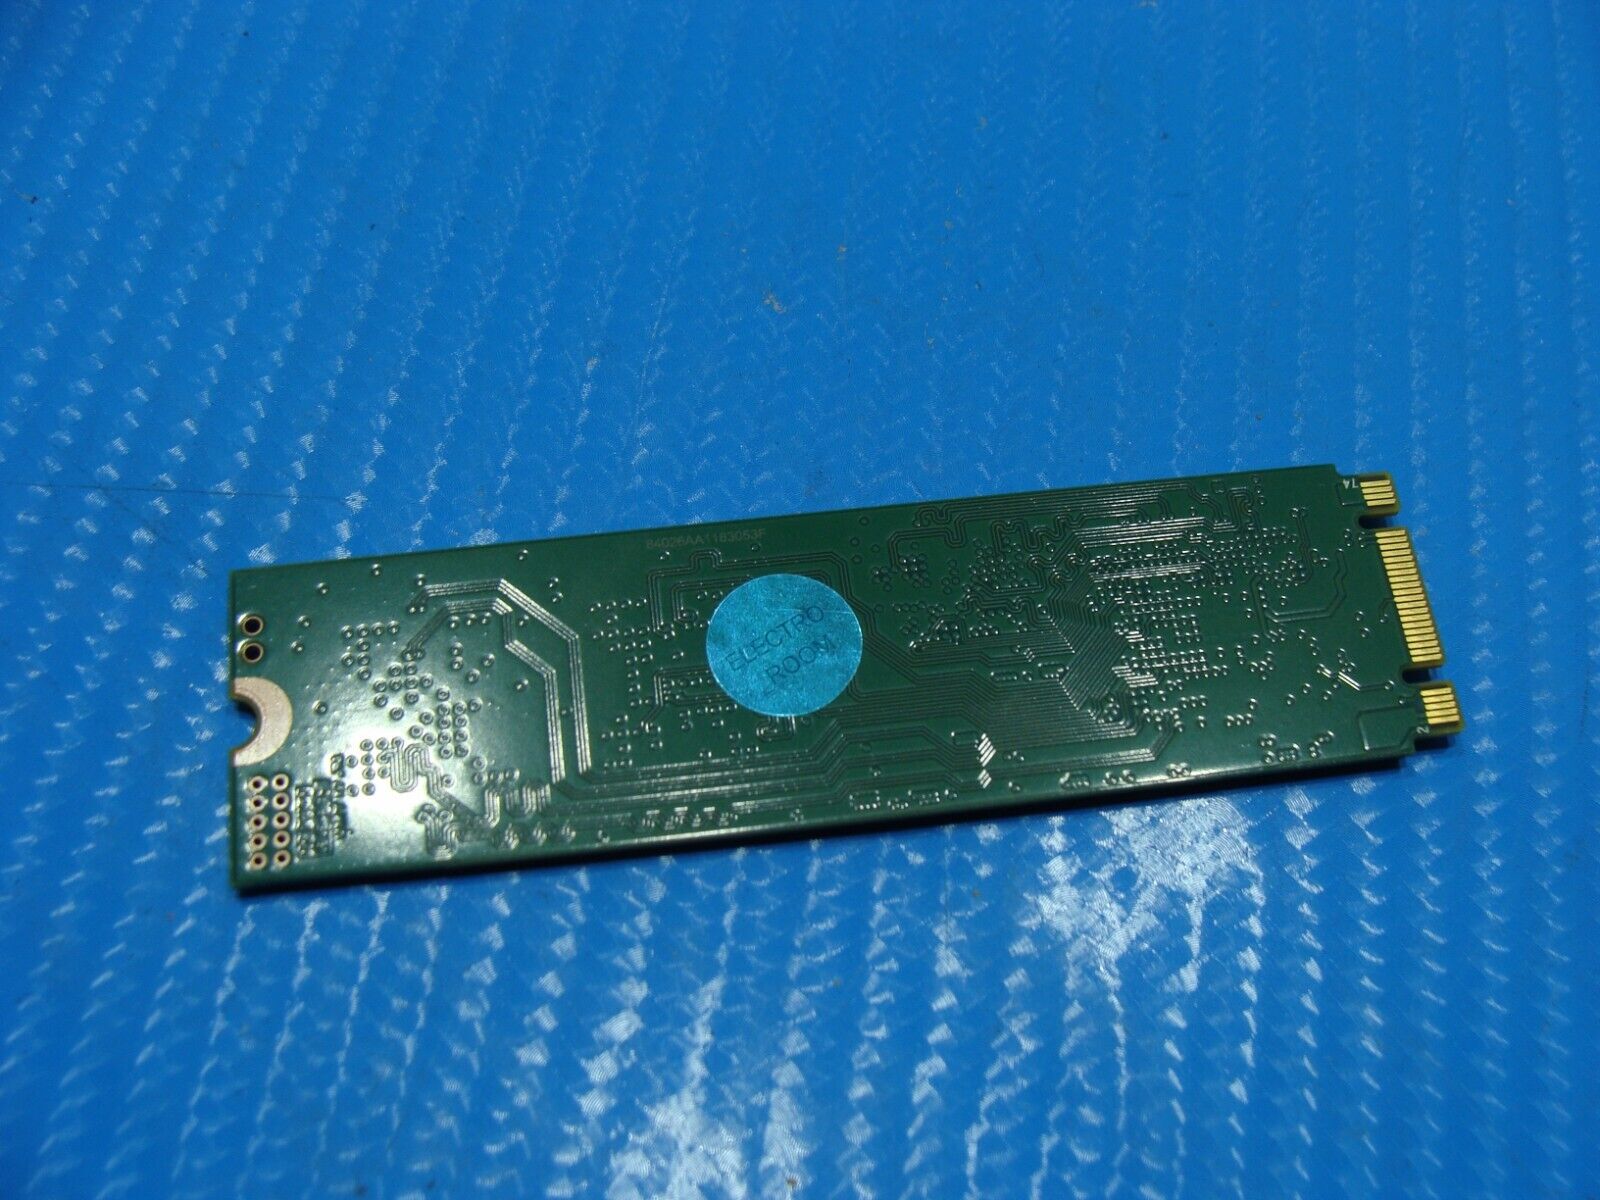 LG 14Z980 SK Hynix 256GB M.2 SATA SSD Solid State Drive HFS256G39TNF-N3A0A